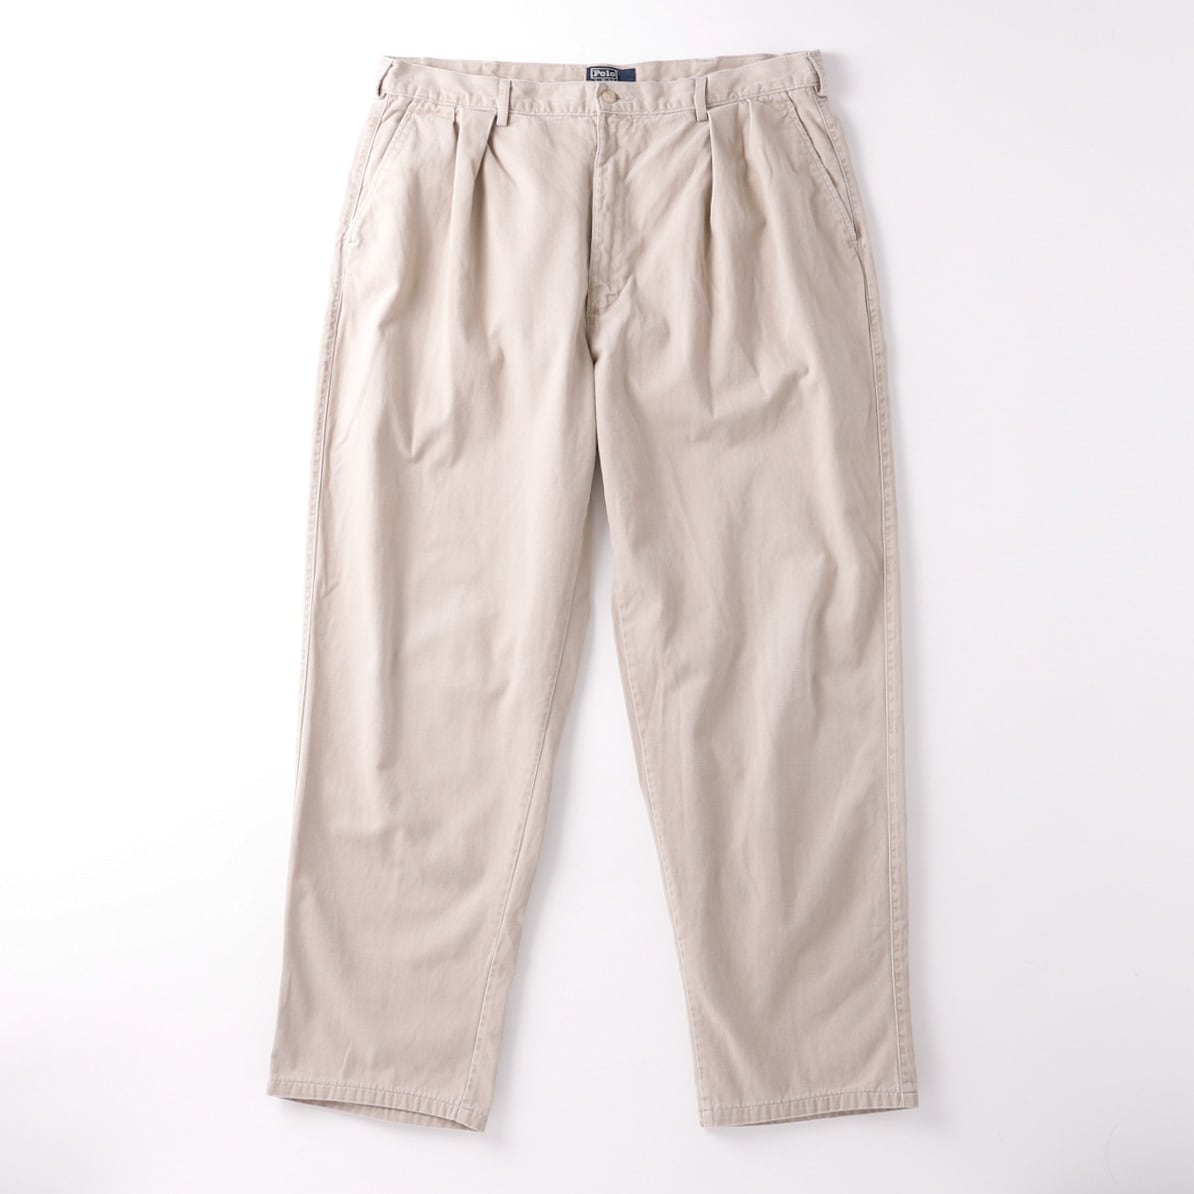 【極美品】80s Ralph Lauren special vintage tuck slacks chino pants 